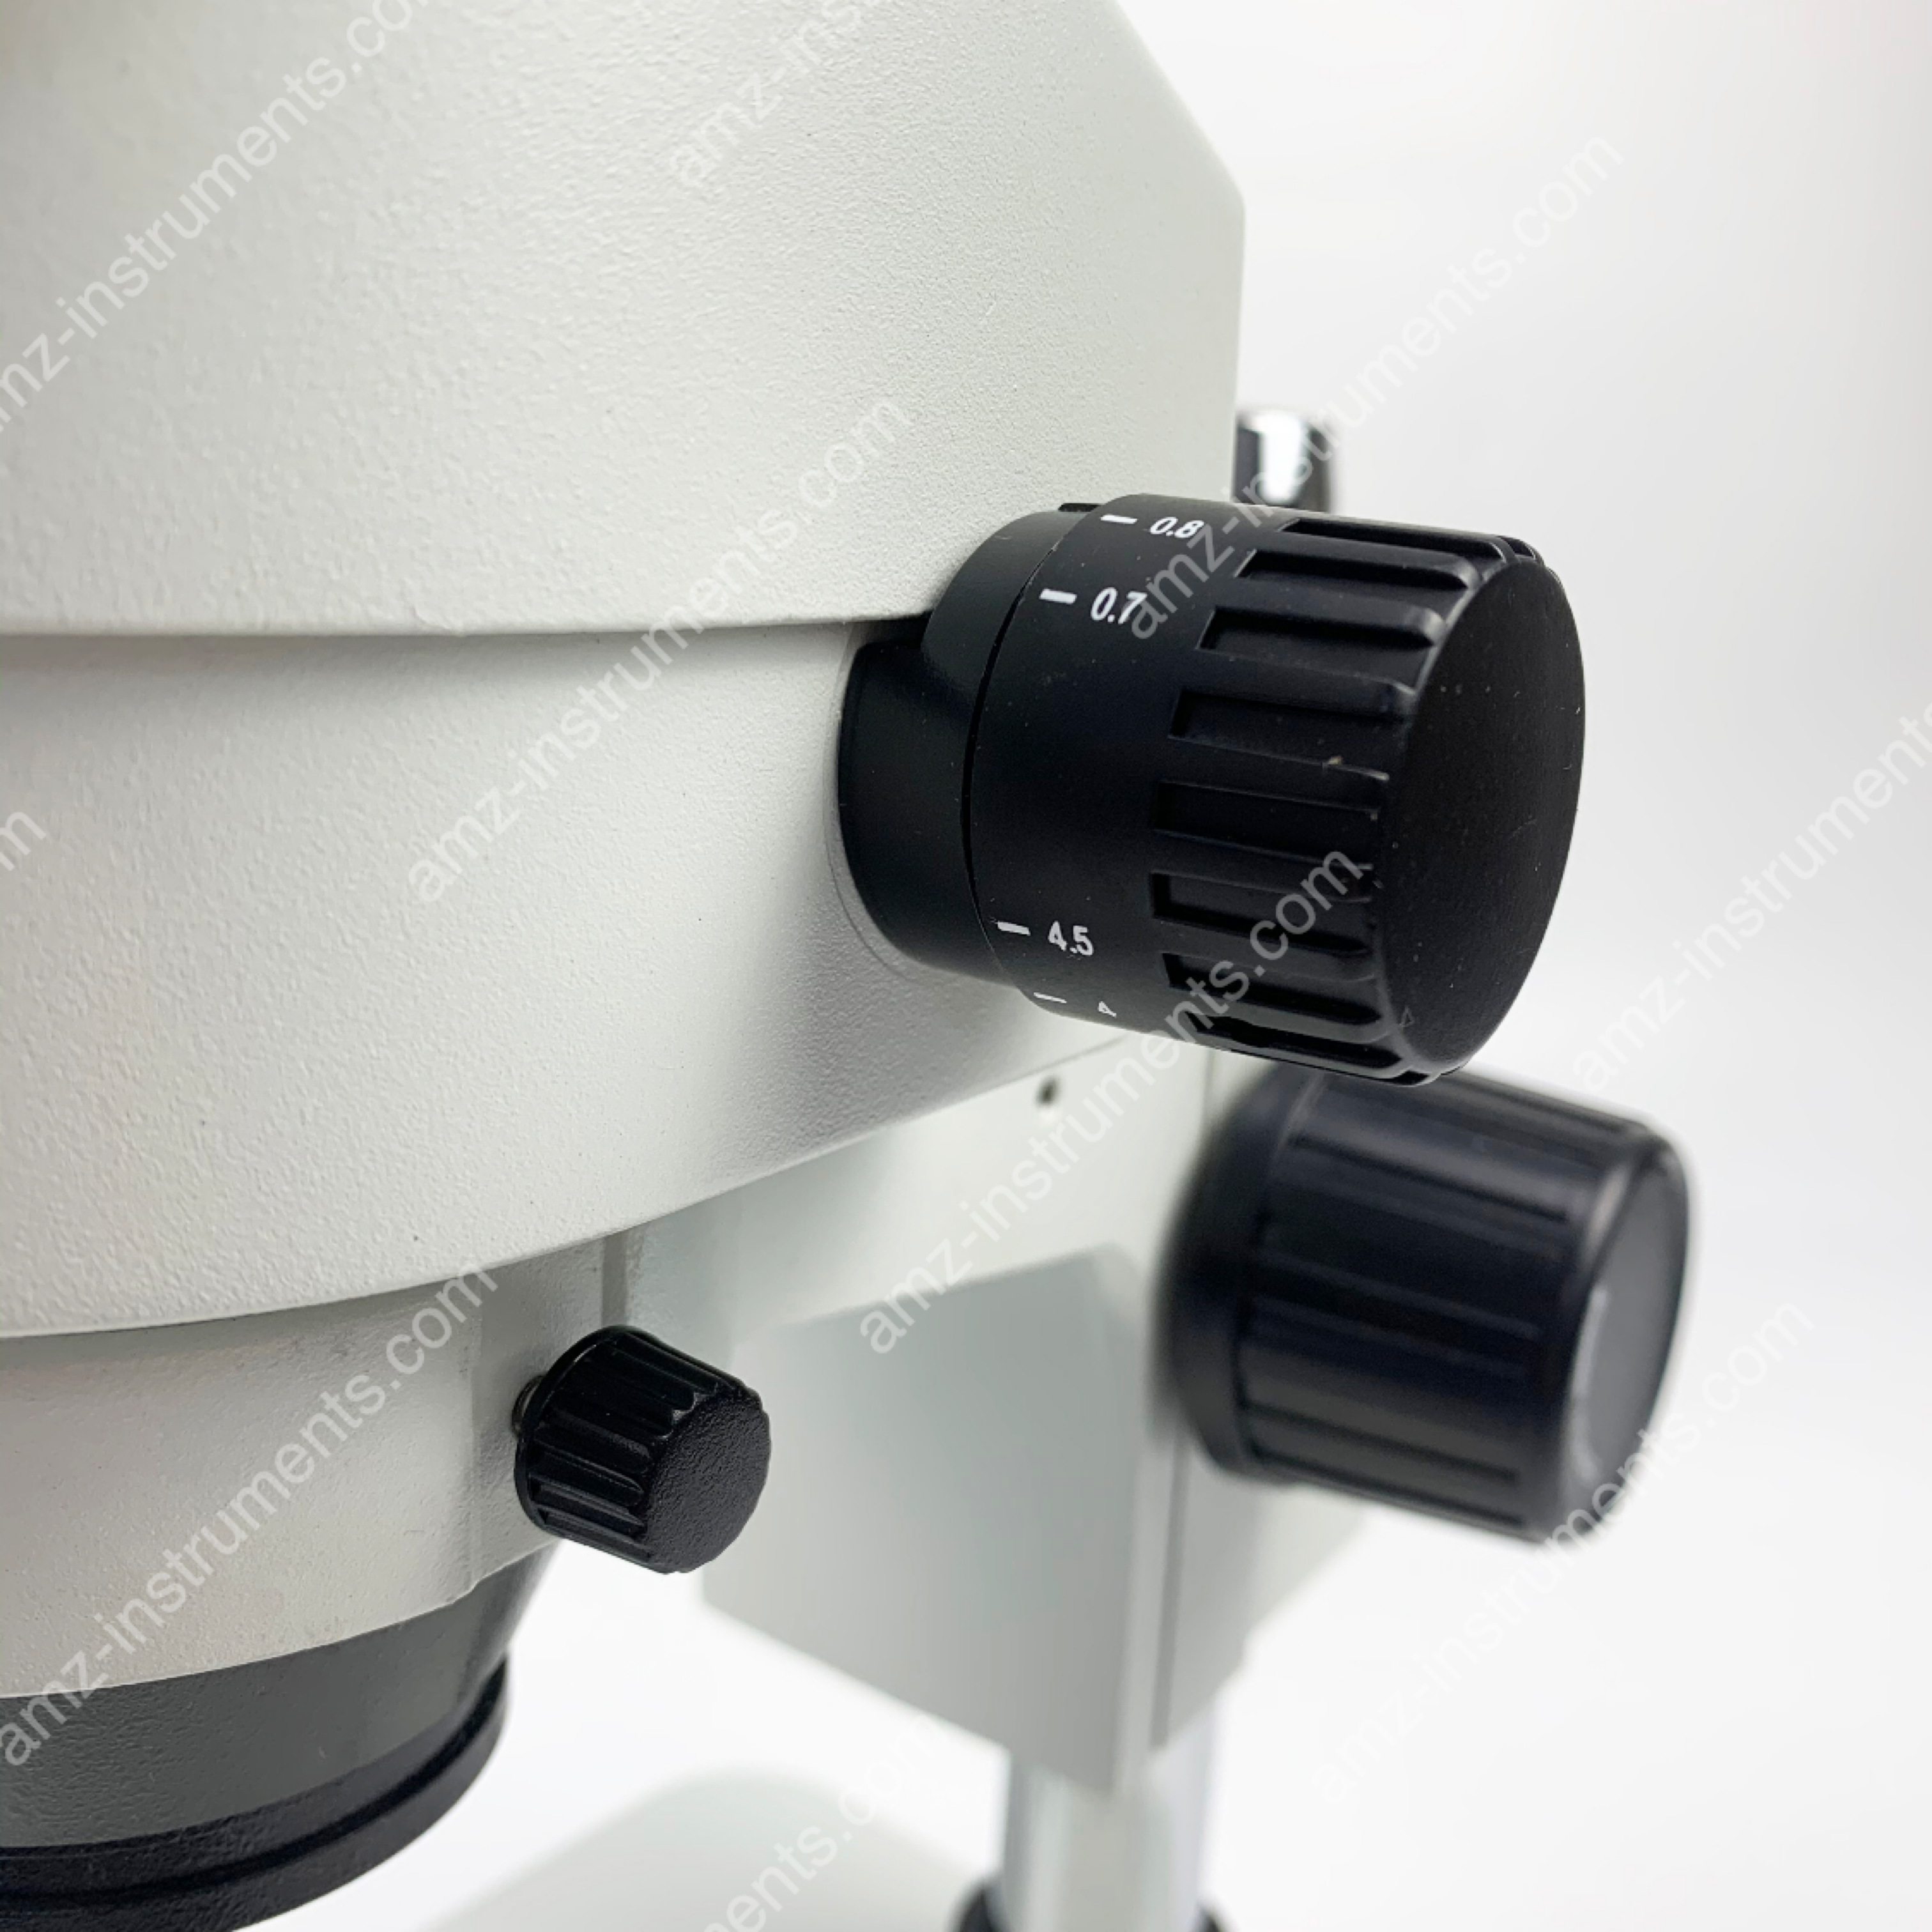 ZM-2TD2 0.7X-4.5X Zoom Trinocular Stereo Microscope